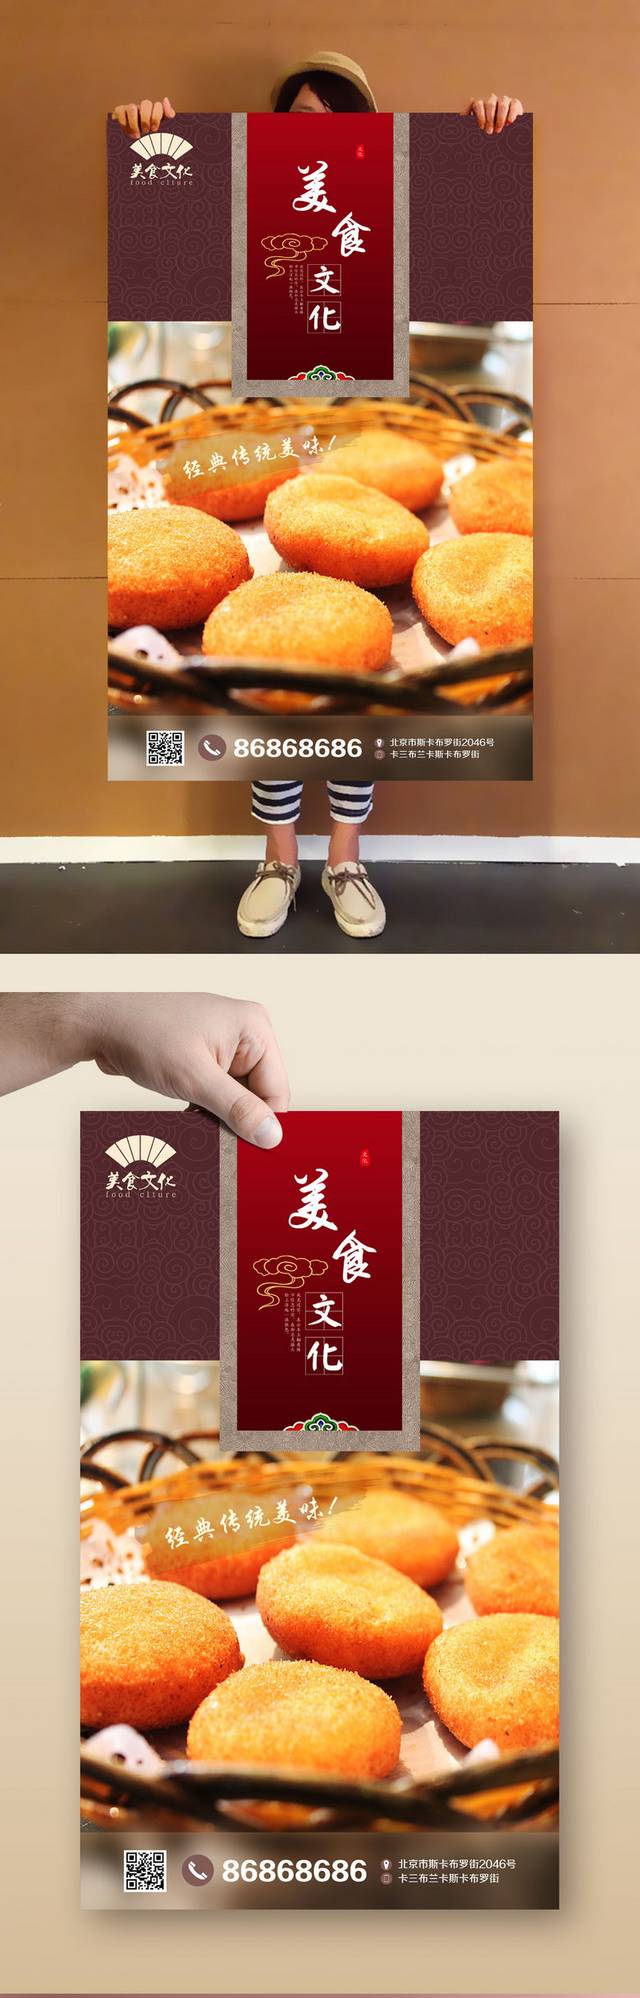 红色高档南瓜饼海报宣传设计